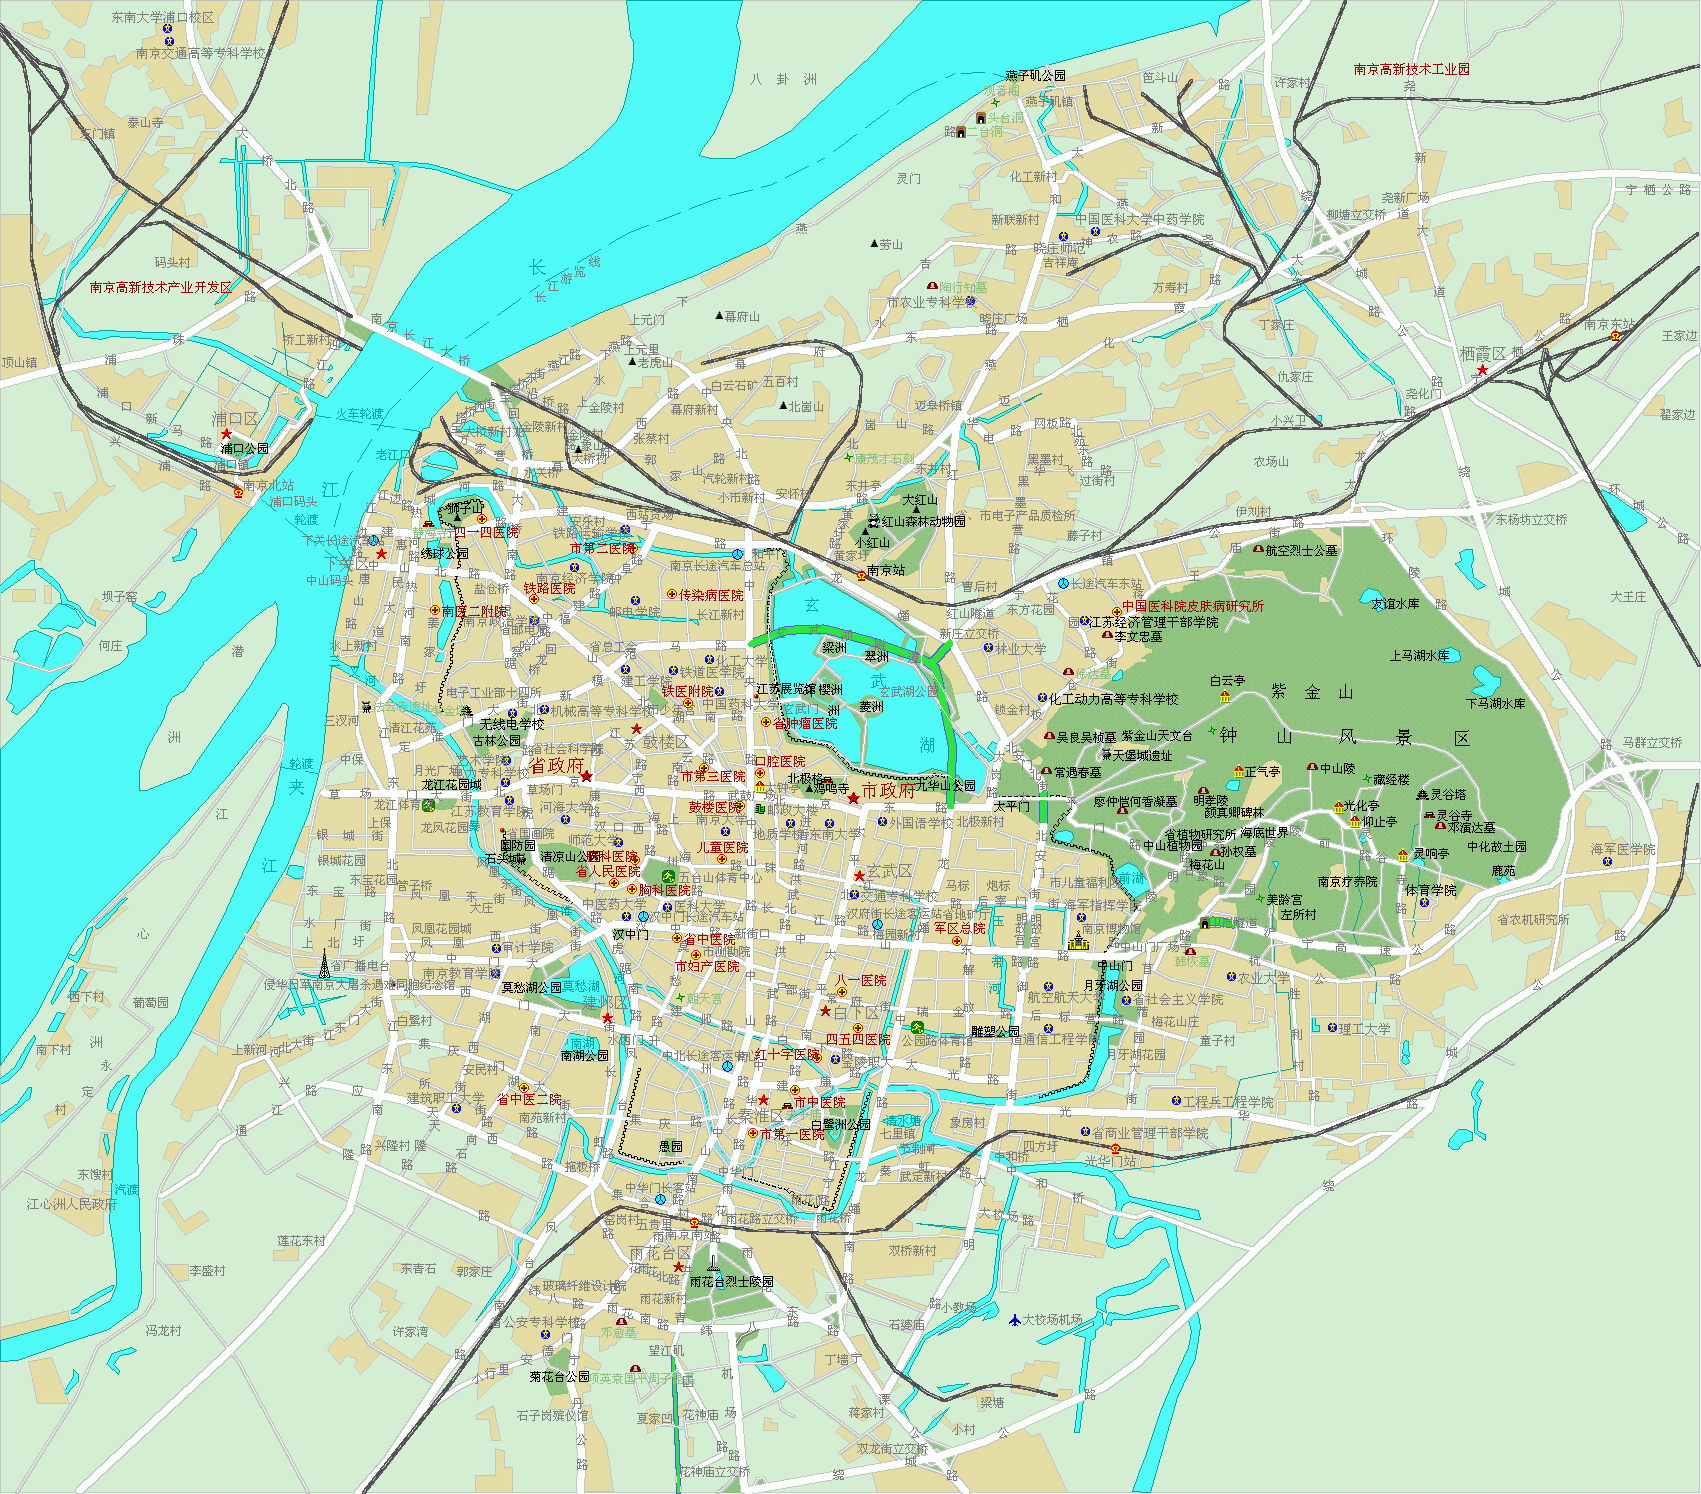 nanjing city centre carte